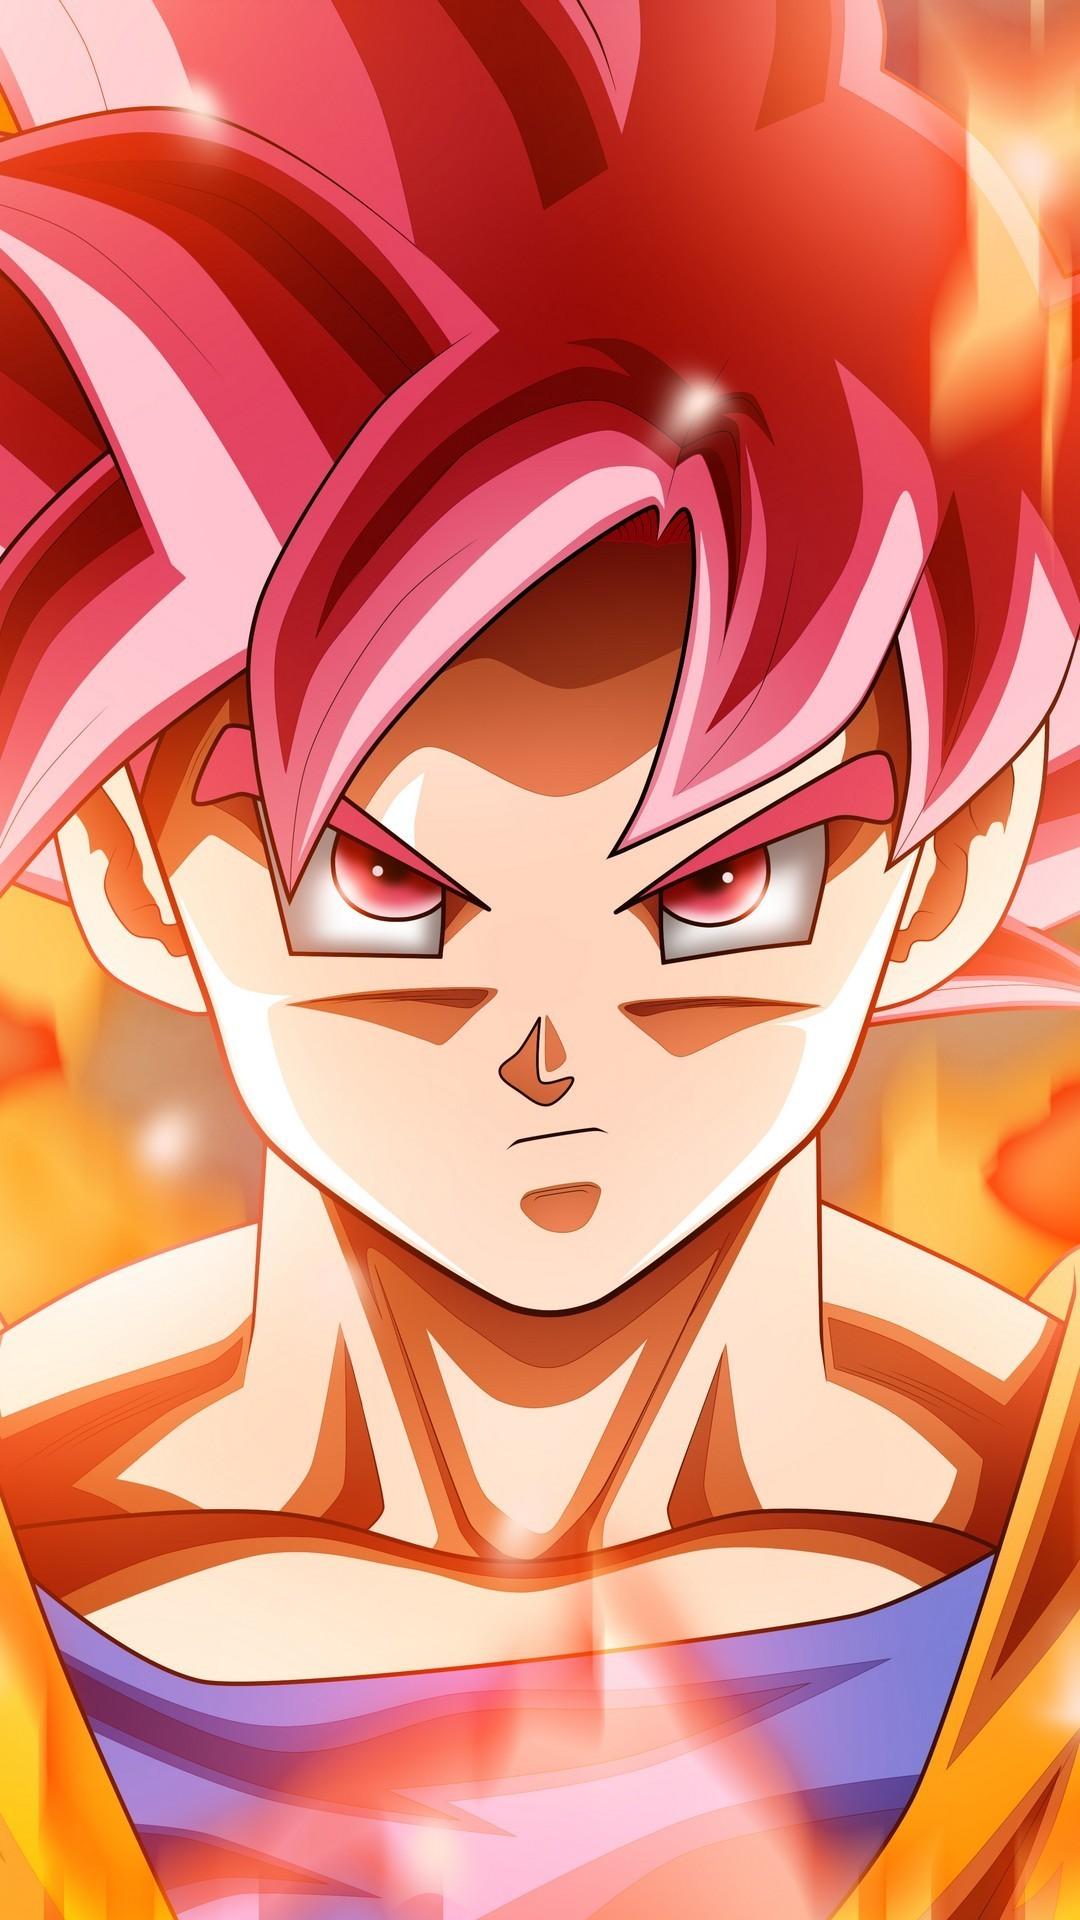 Wallpaper Android Goku Super Saiyan God Android